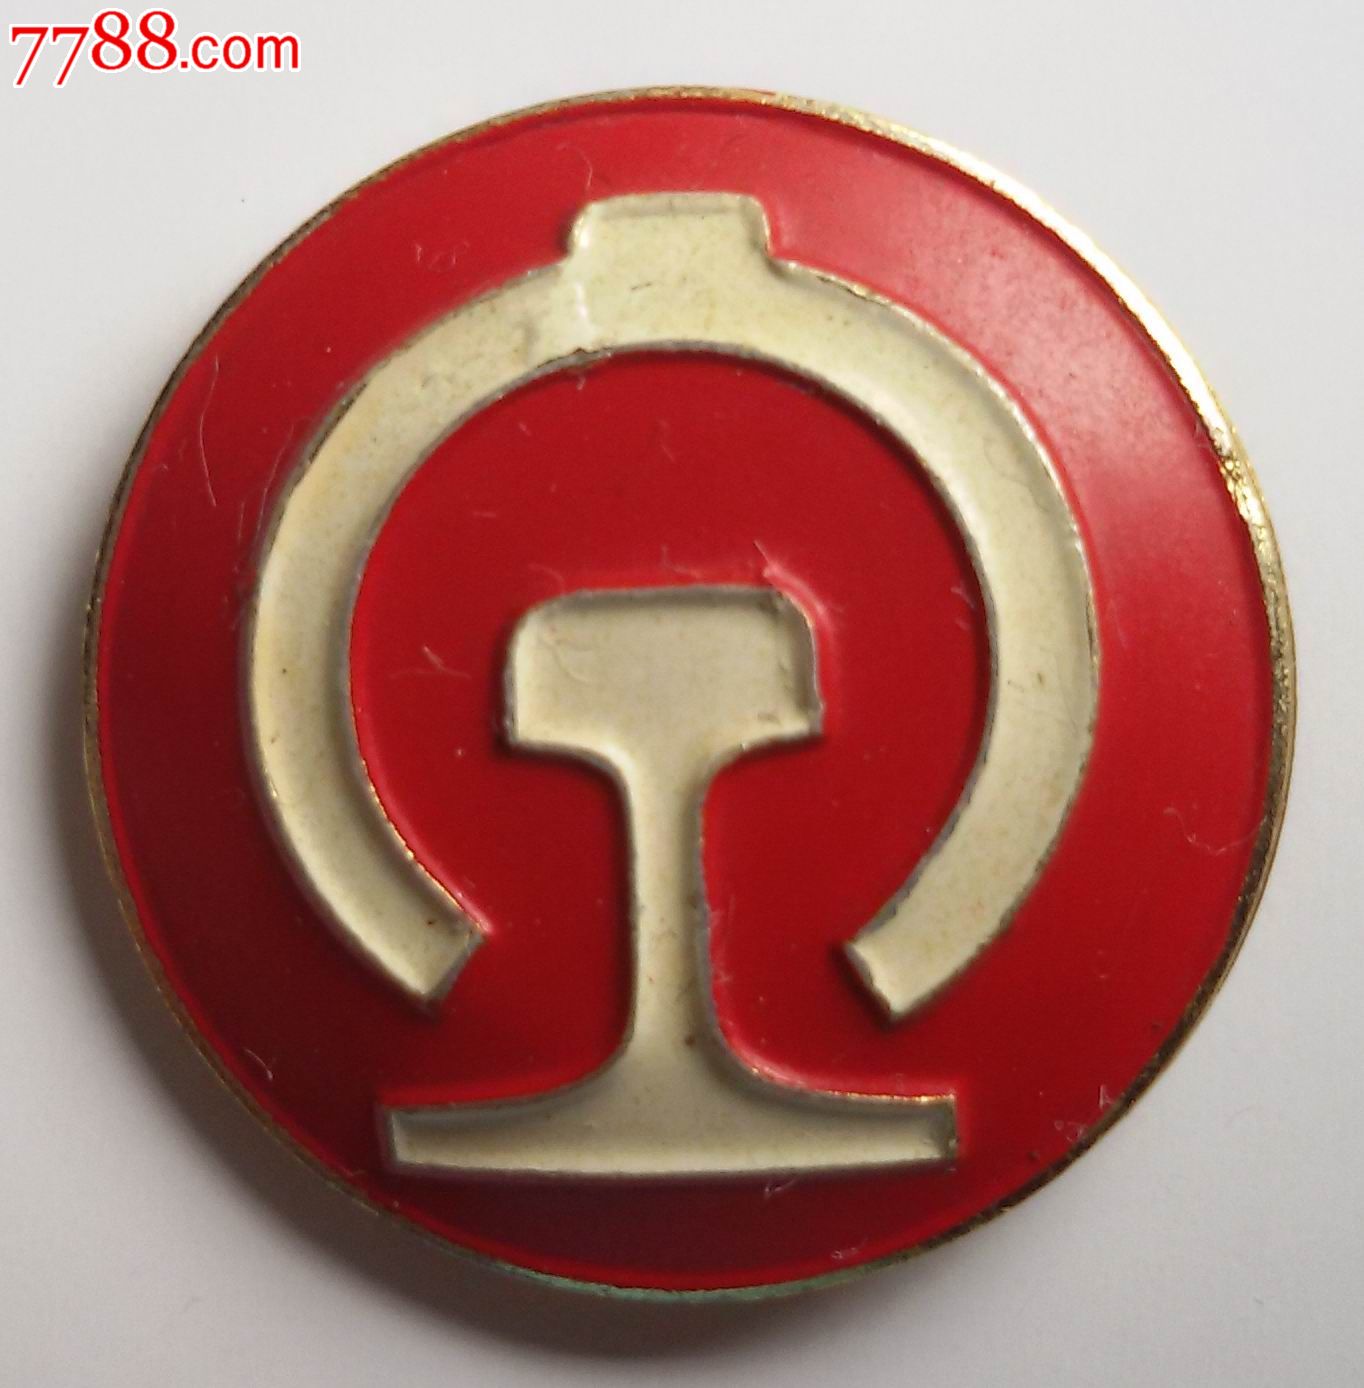 1982年铁道部发放的铁路路徽